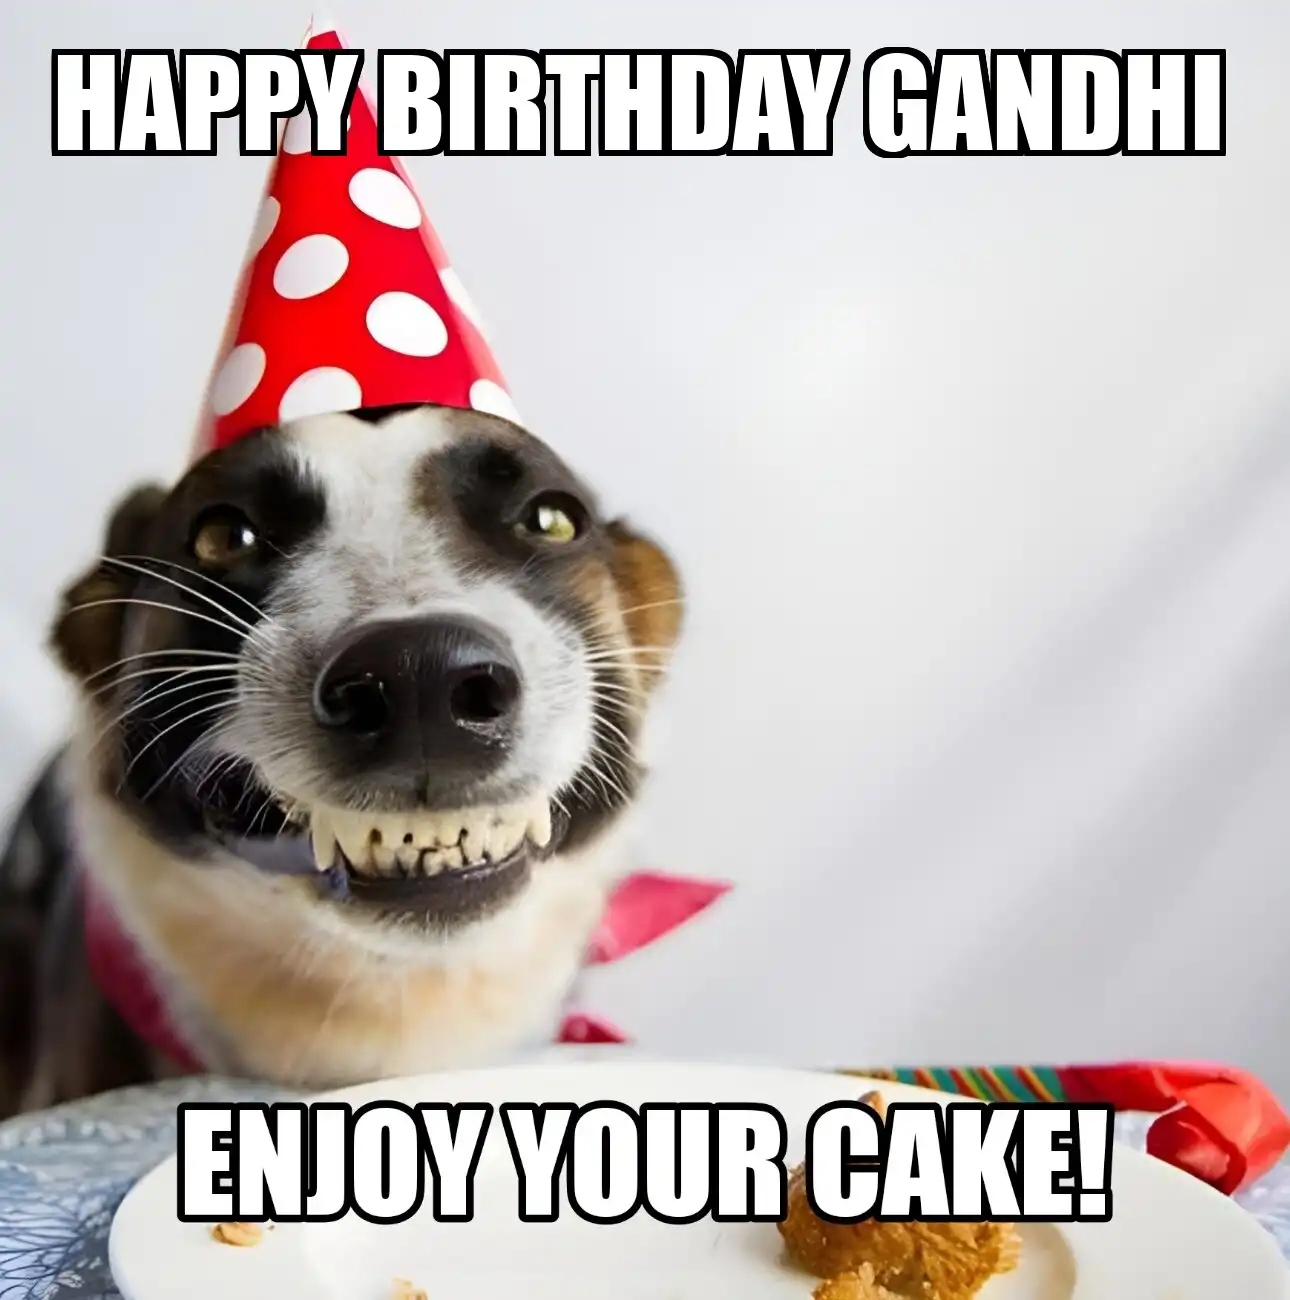 Happy Birthday Gandhi Enjoy Your Cake Dog Meme